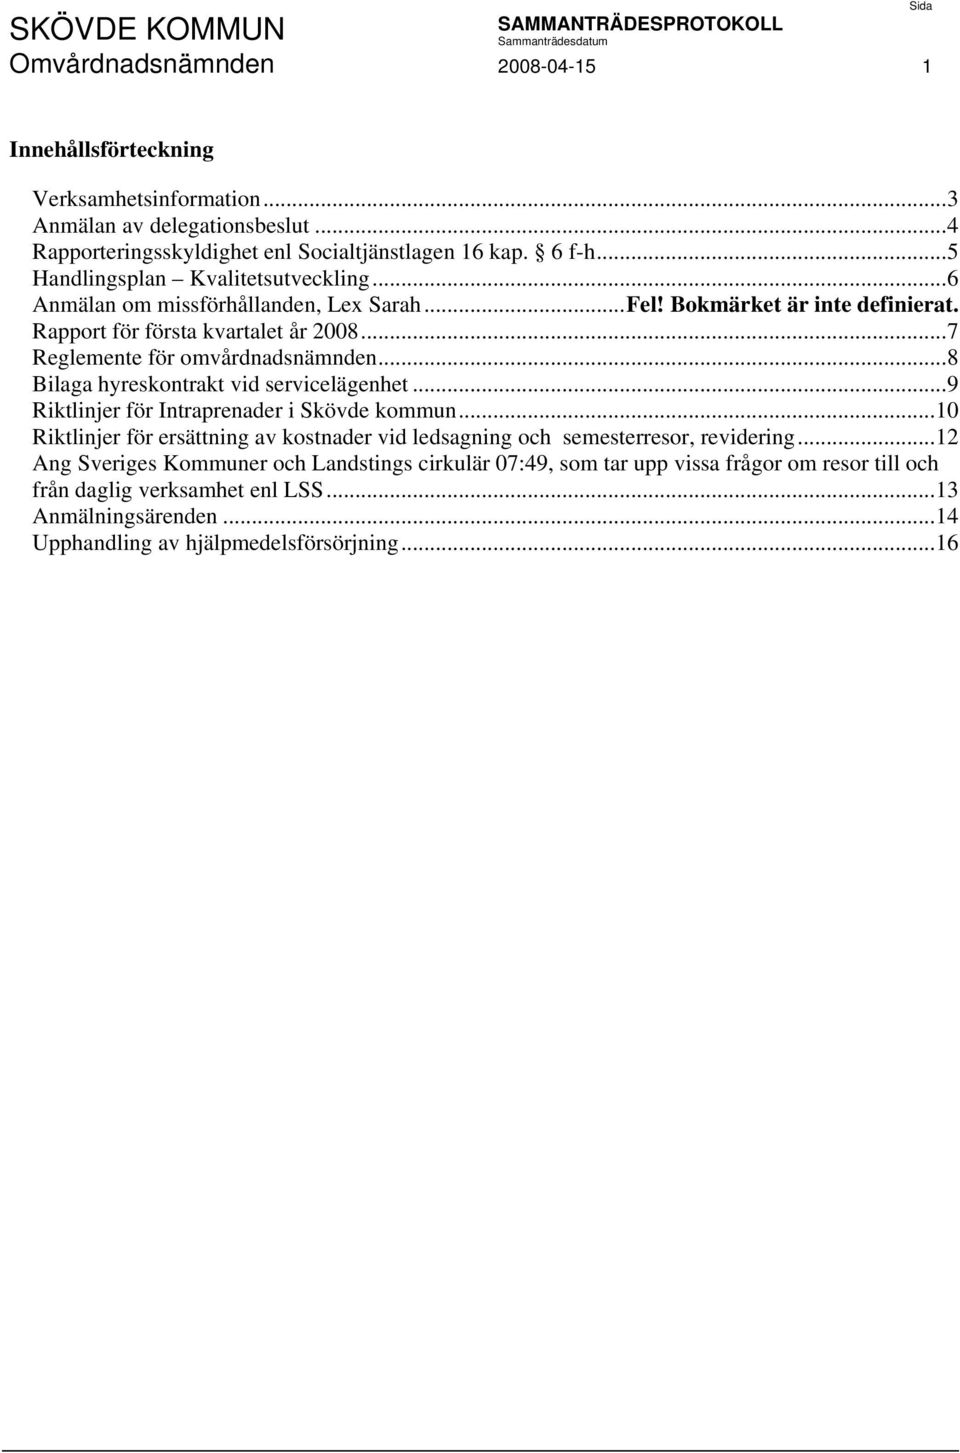 ..7 Reglemente för omvårdnadsnämnden...8 Bilaga hyreskontrakt vid servicelägenhet...9 Riktlinjer för Intraprenader i Skövde kommun.